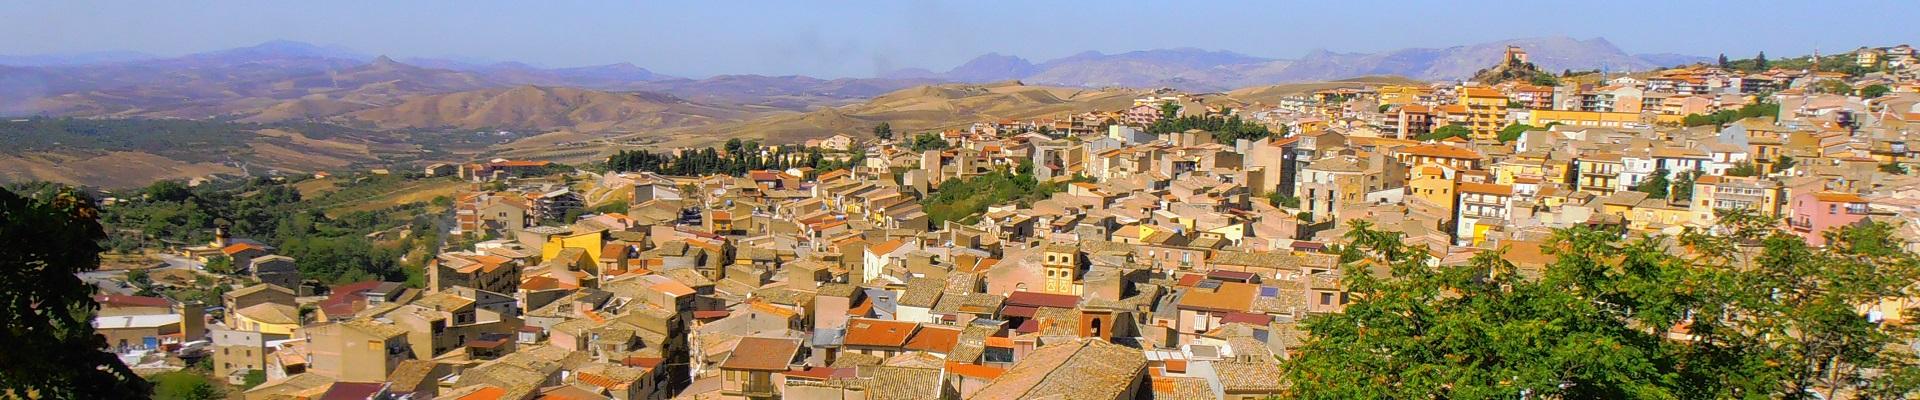 Ville e case vacanze in Sicilia vicino Corleone